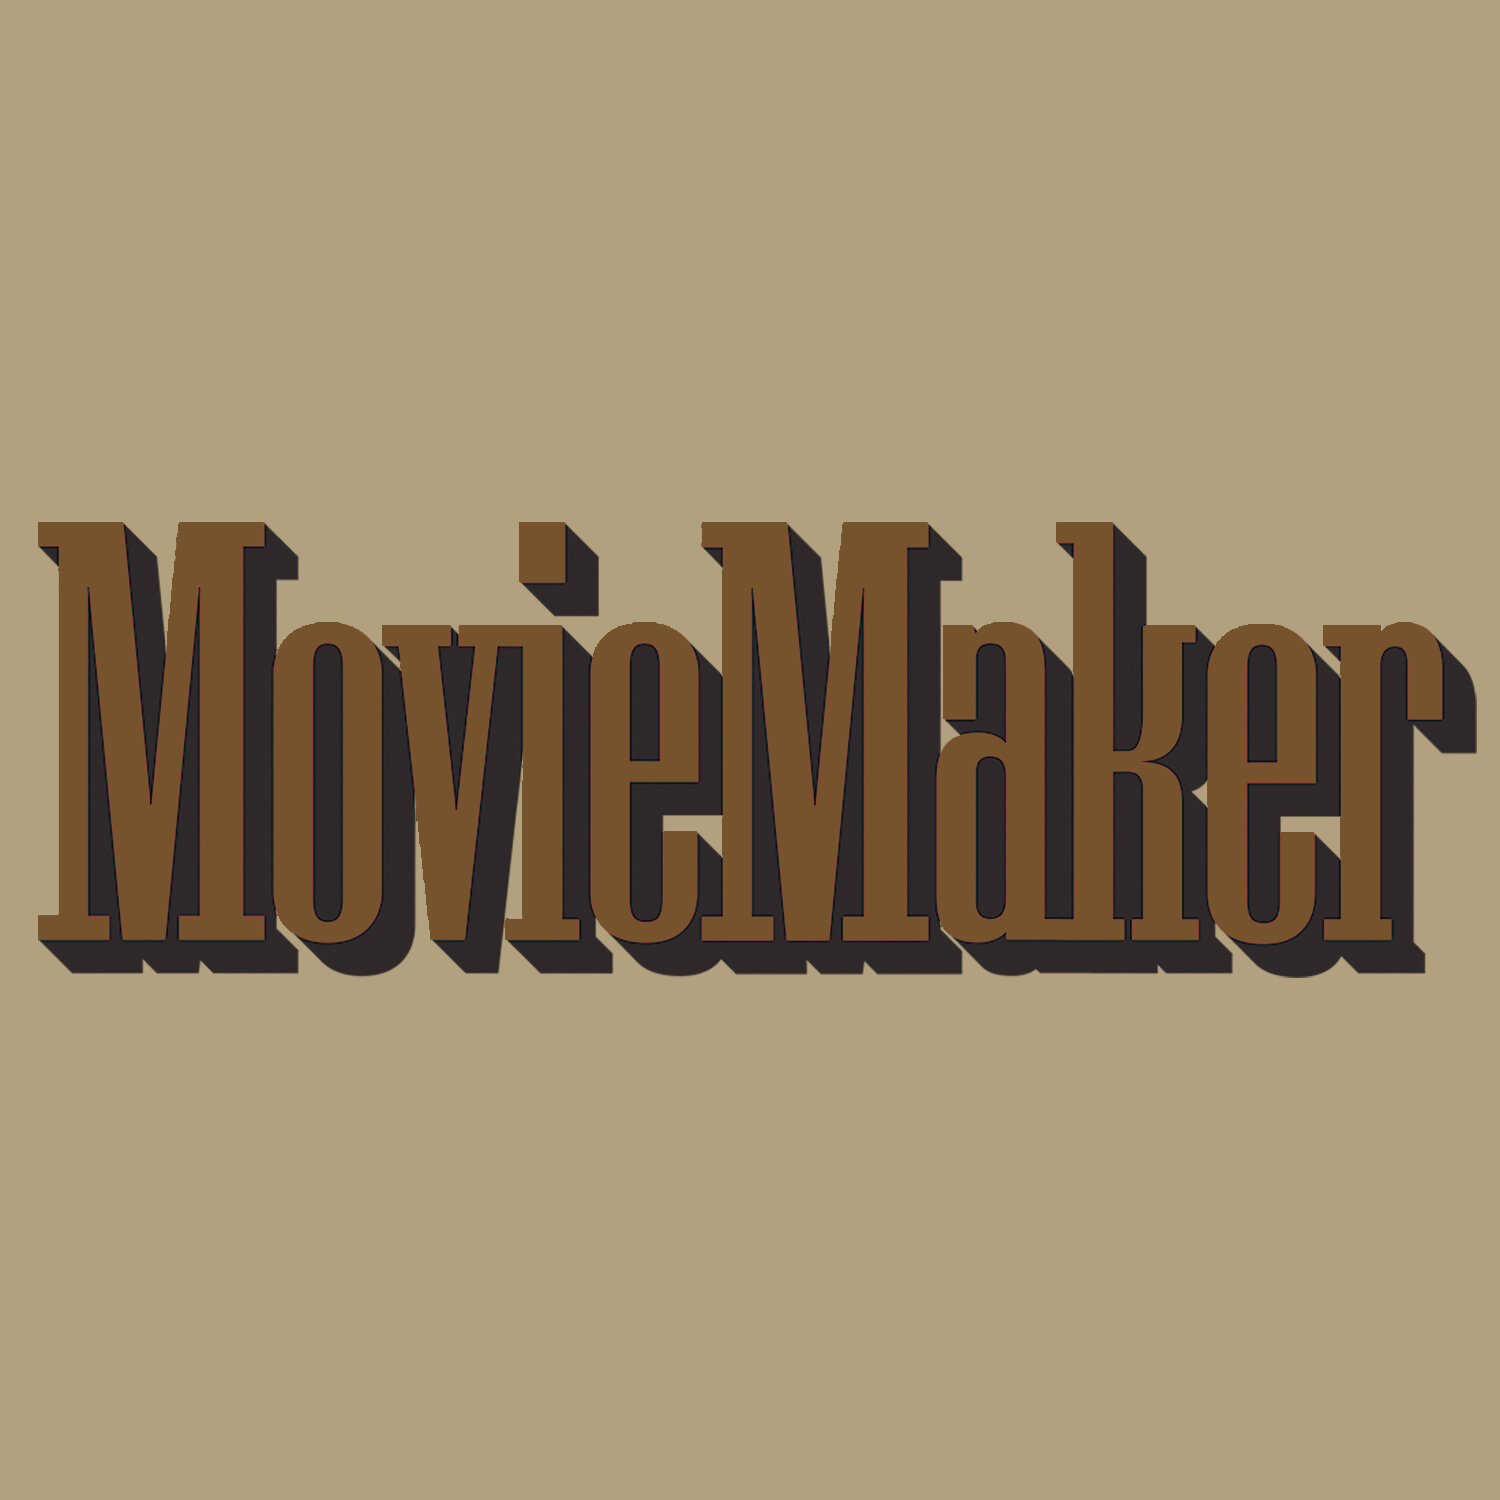 MovieMaker Magazine features "Jörmundur"